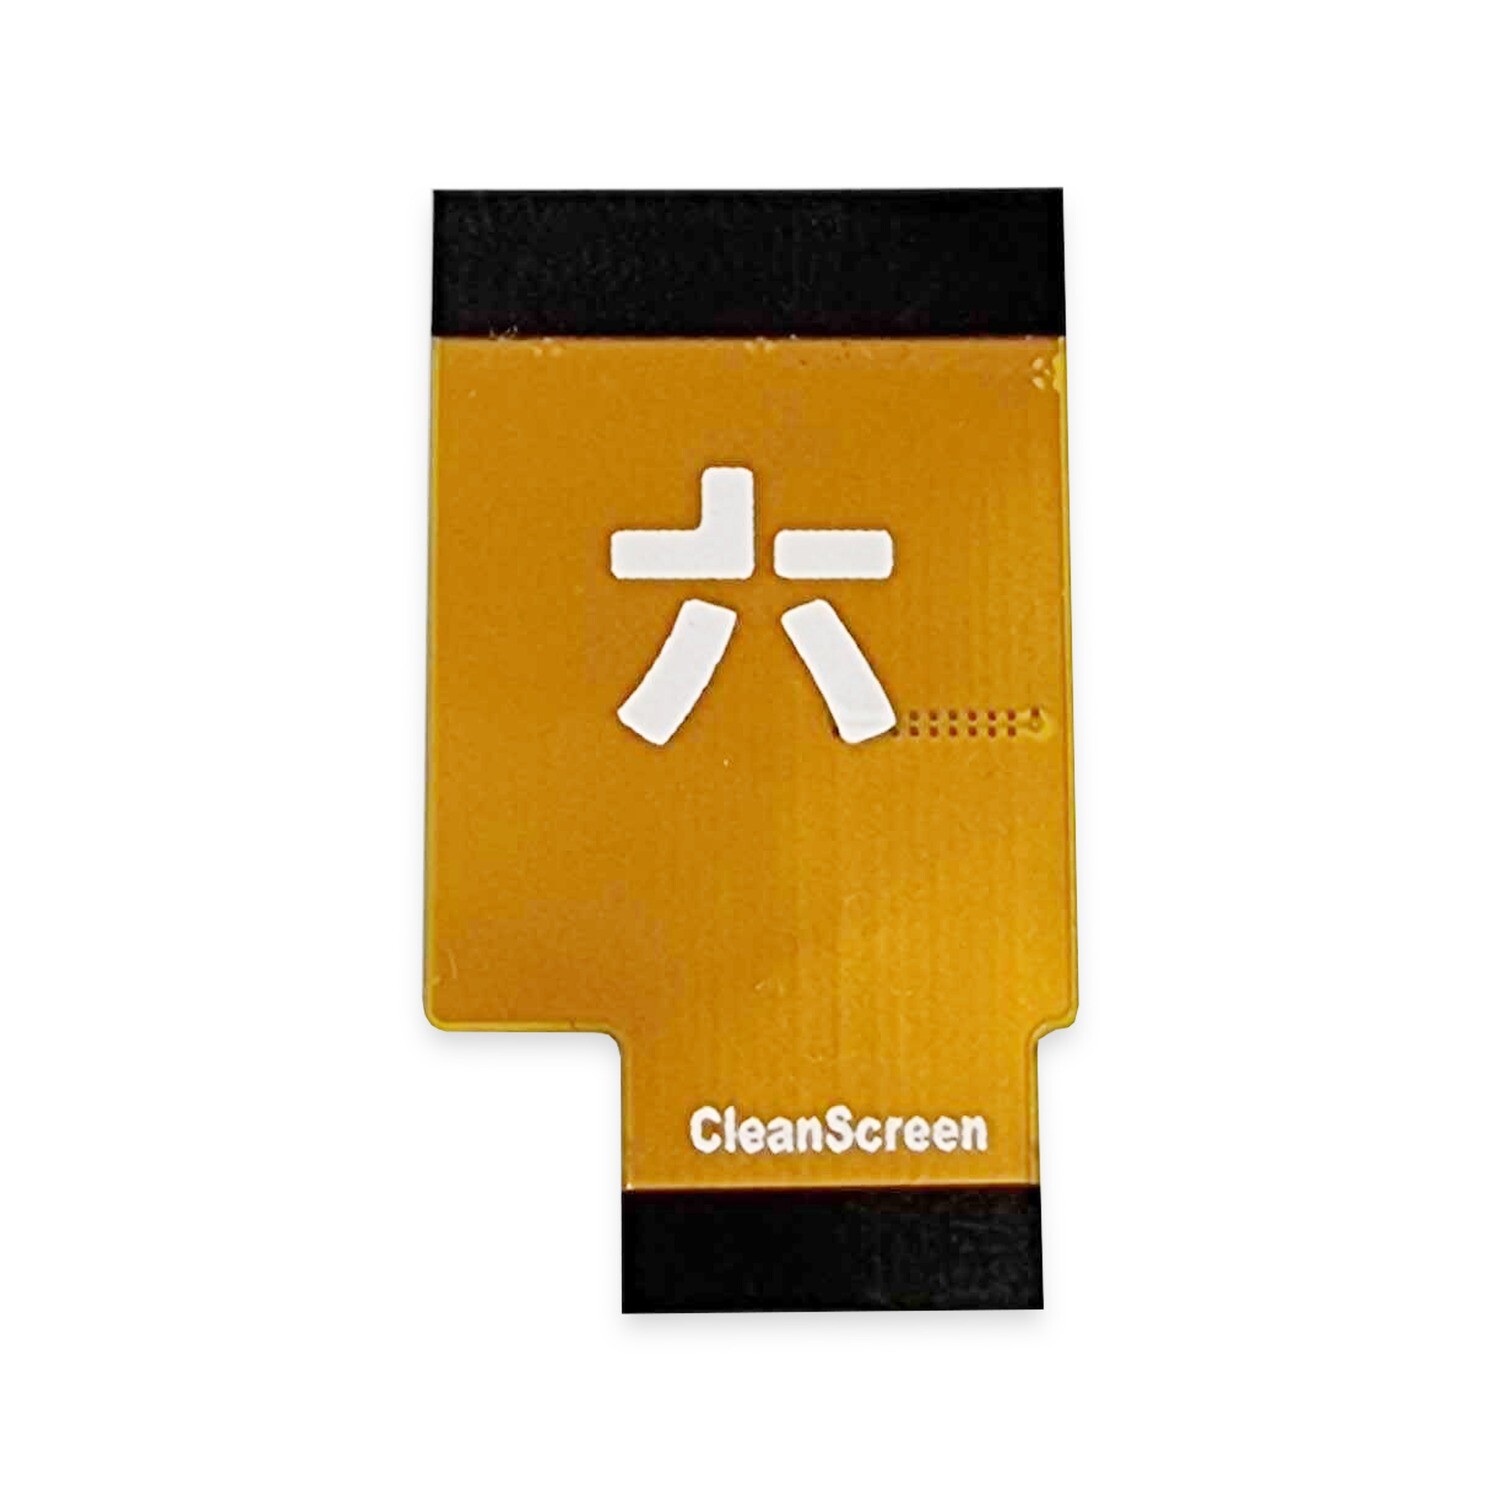 Game Boy Advance CleanScreen Ribbon (32 Pin)